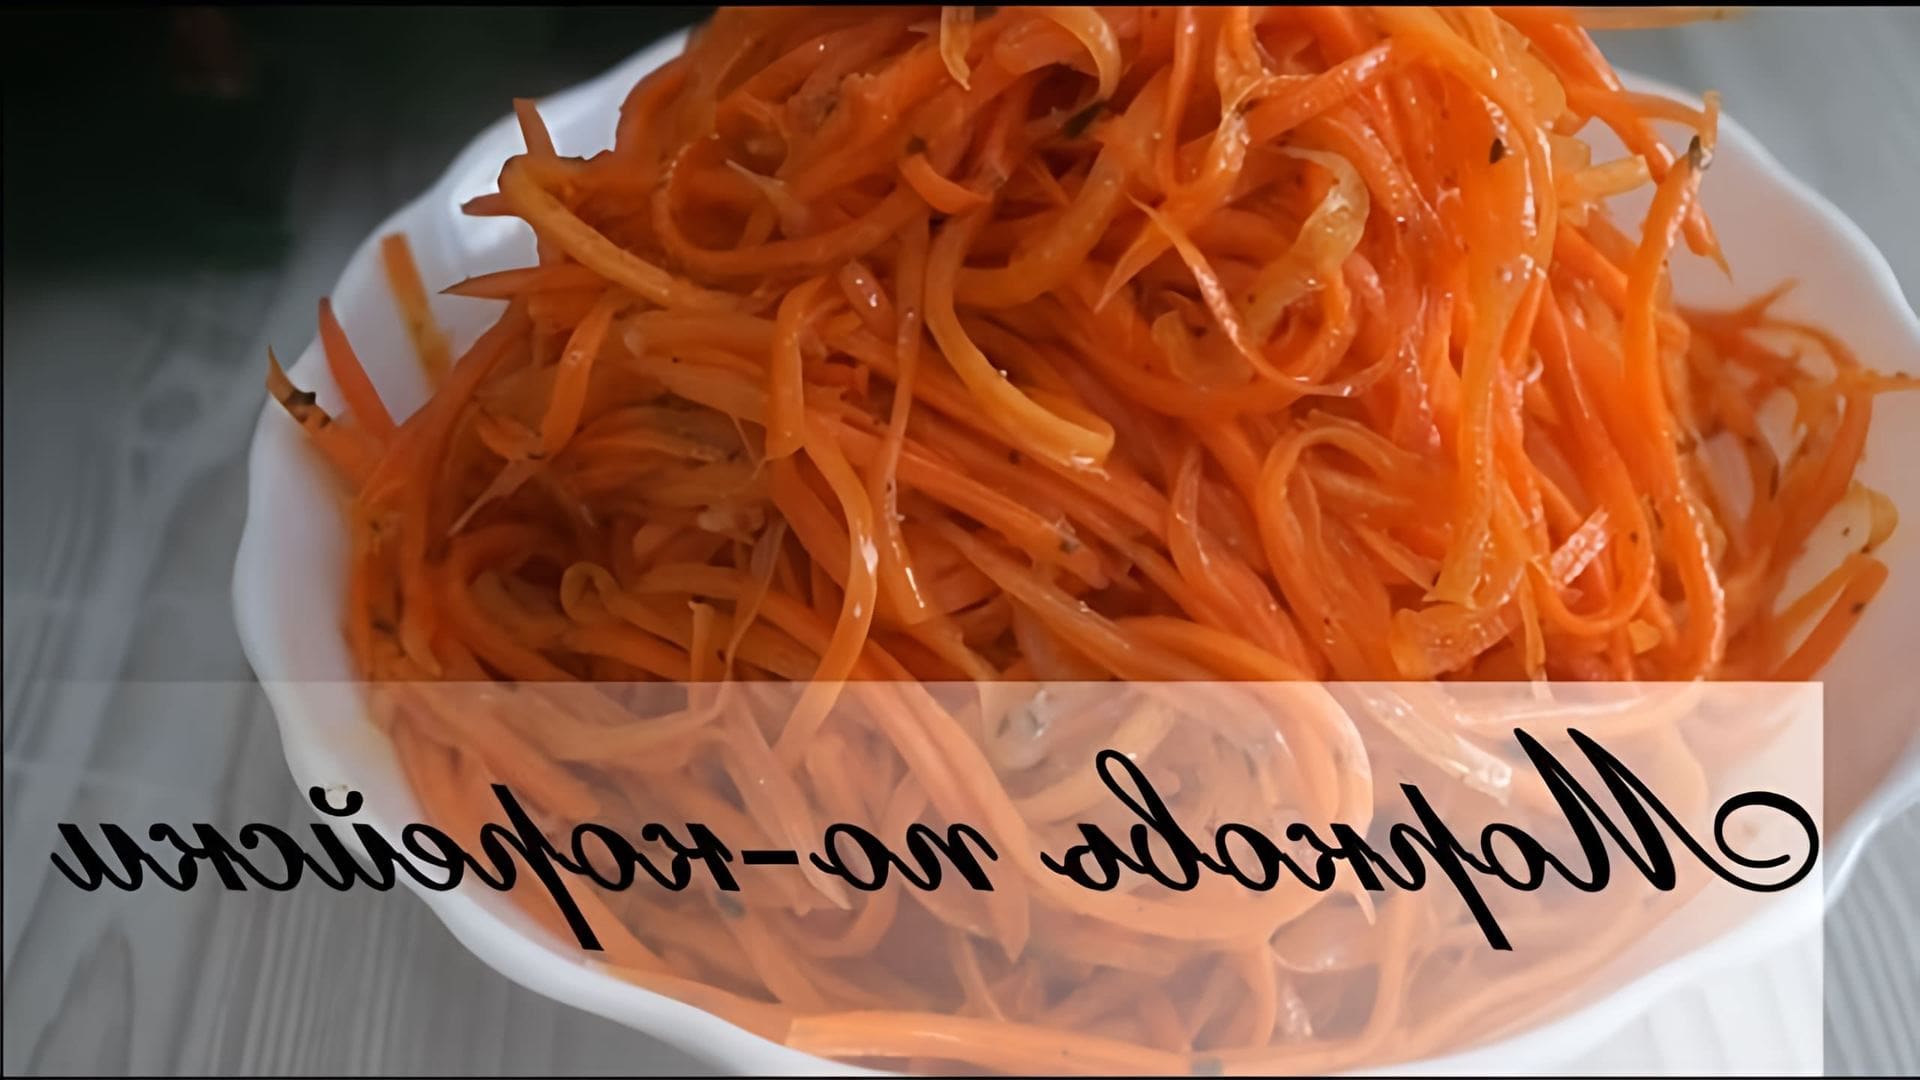 В этом видео демонстрируется процесс приготовления моркови по-корейски - острого пряного салата, который можно использовать как самостоятельную закуску или как дополнение к другим блюдам